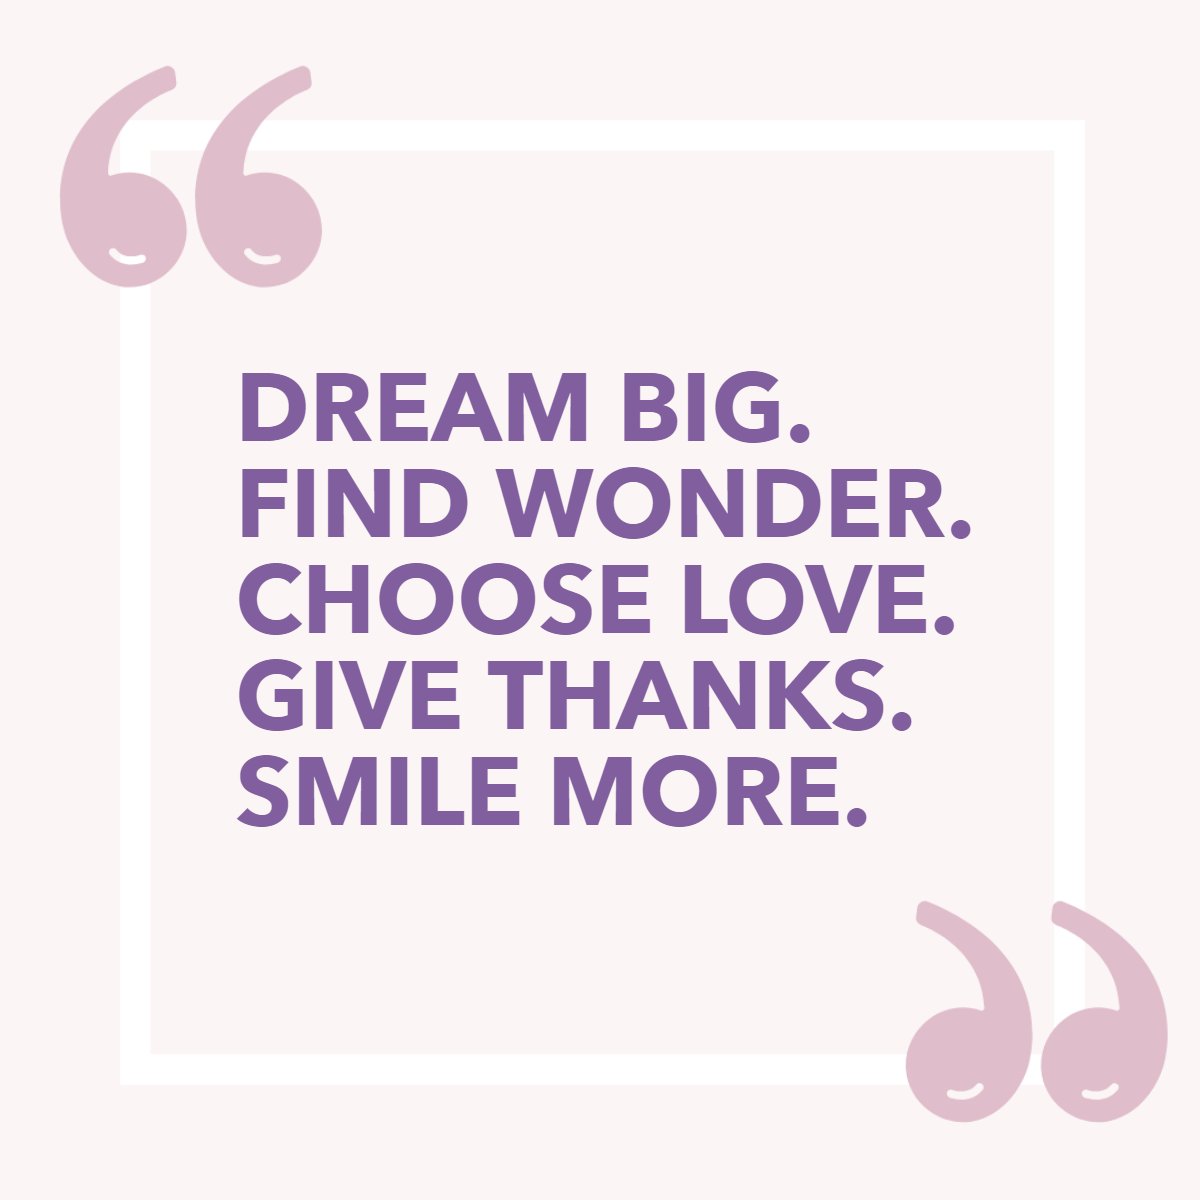 Dream Big.
Find Wonder. 
Choose Love. 
Give Thanks. 
Smile More.🤗

#dreambig #givethanks #smilemore #bigdreams #ichooselove #findwonder #smilemore
 #cincyrealtors #scavonerealtor #cincinnatirealestate #togetherwemakedealshappen #lebanonohio